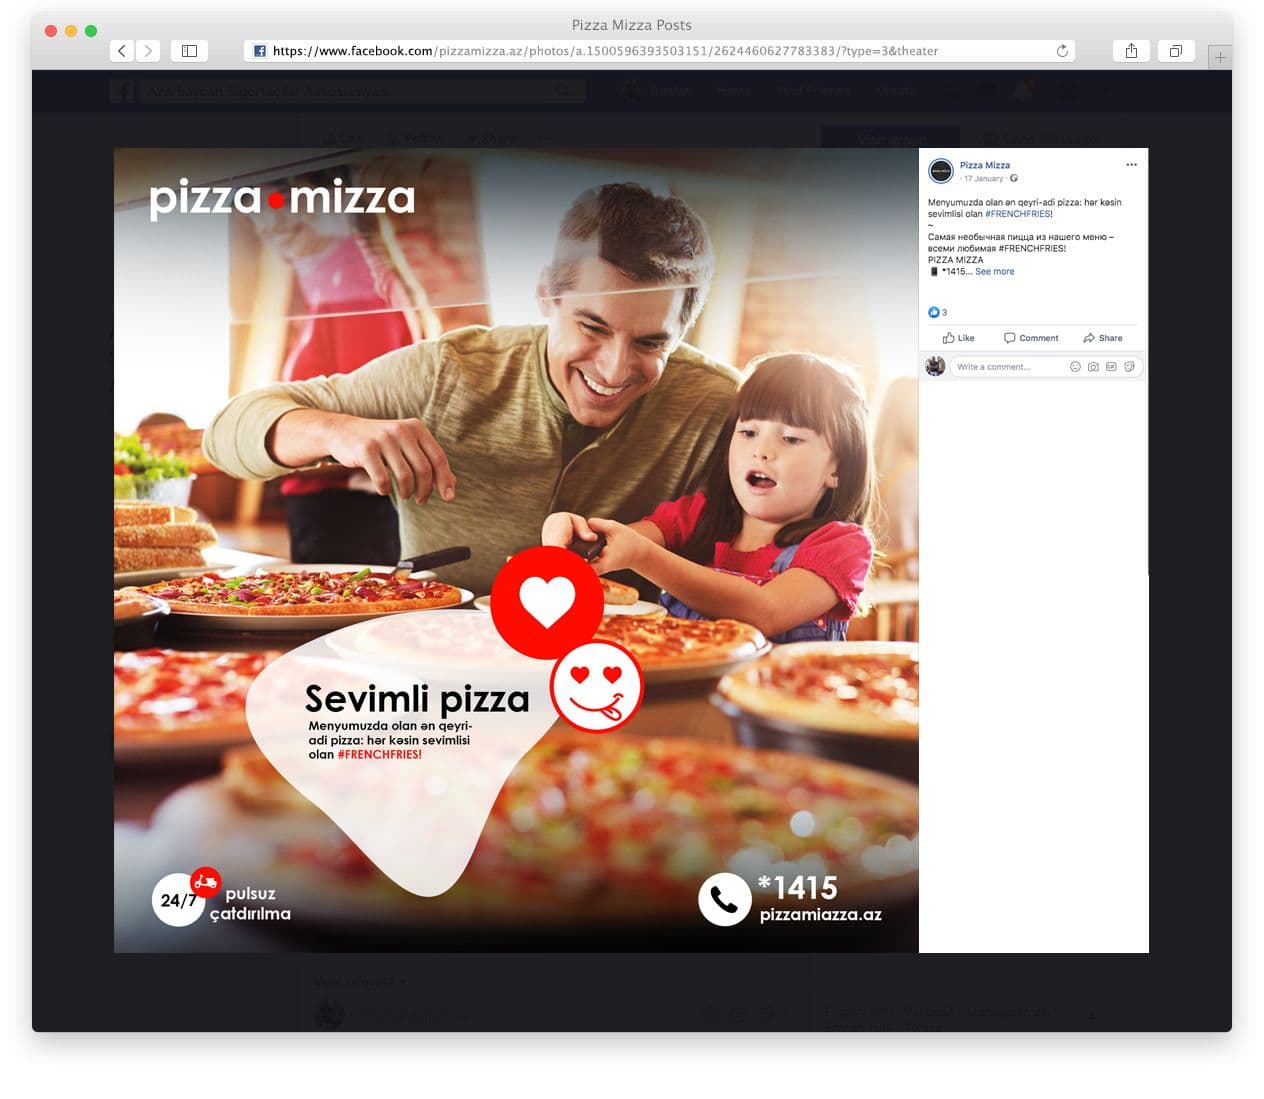 18pizza-mizza-case.jpg